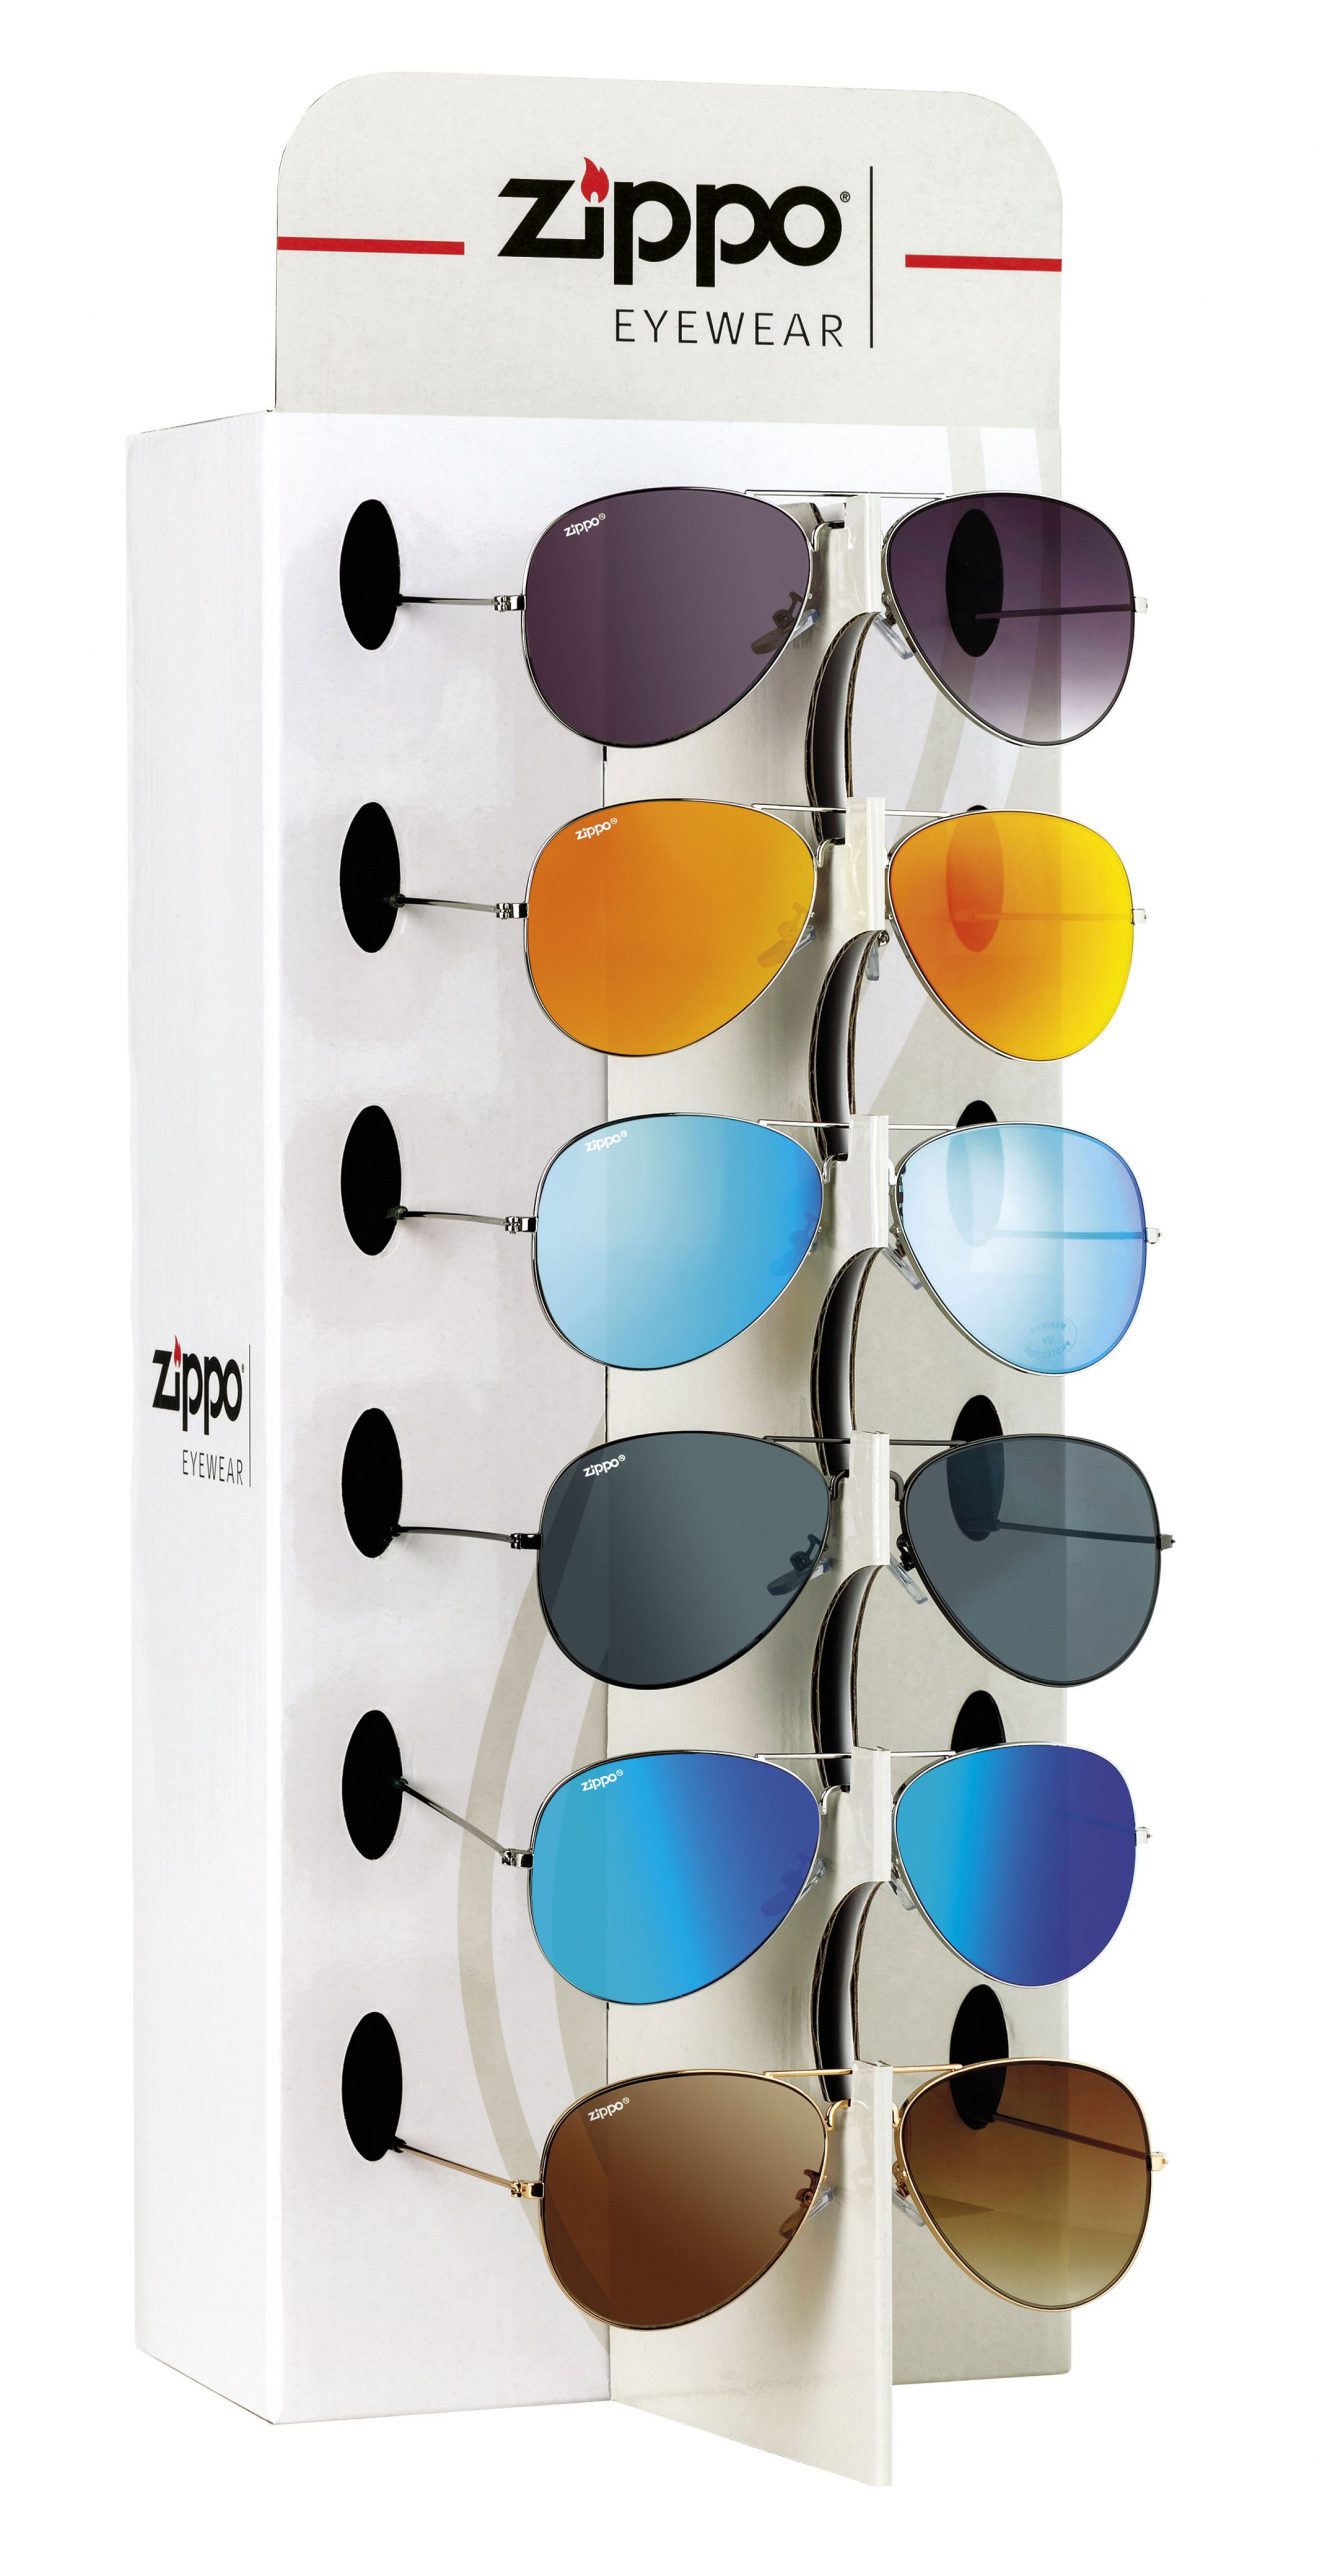 Expositor de gafas diferentes tipos y modelos